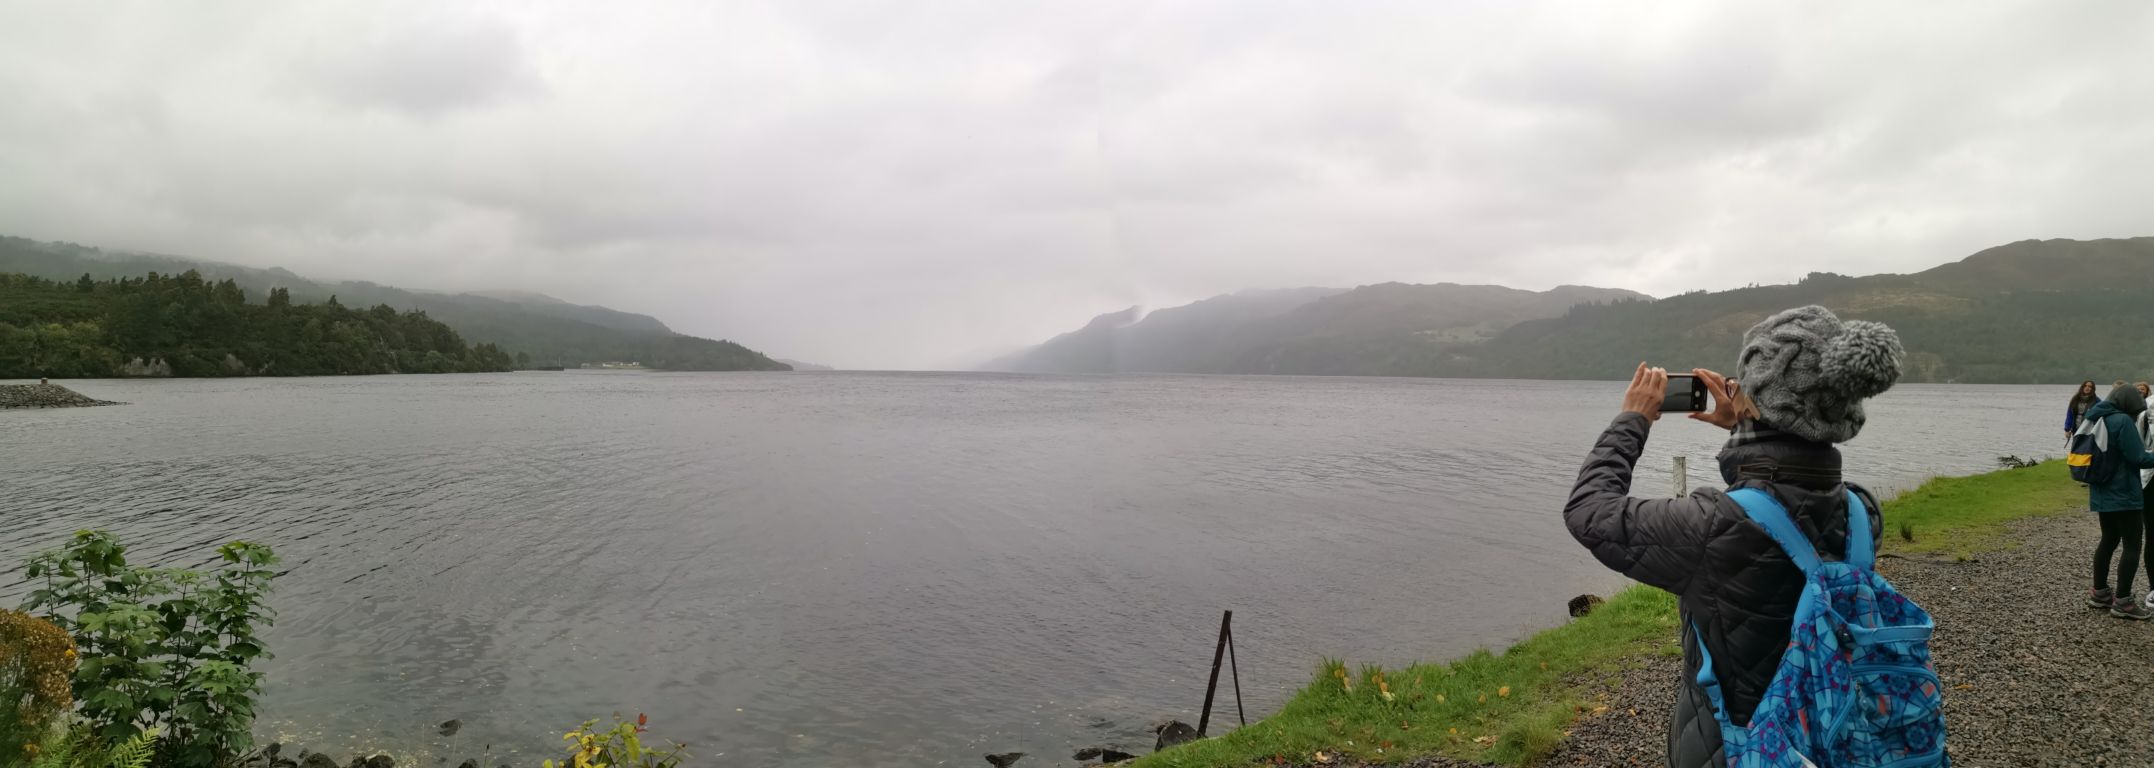 阴雨天，大风夹着冷雨，迷雾笼罩着尼斯湖貌似平静的湖面。因为风大，游船暂停服务，无缘到湖中心探访水怪所